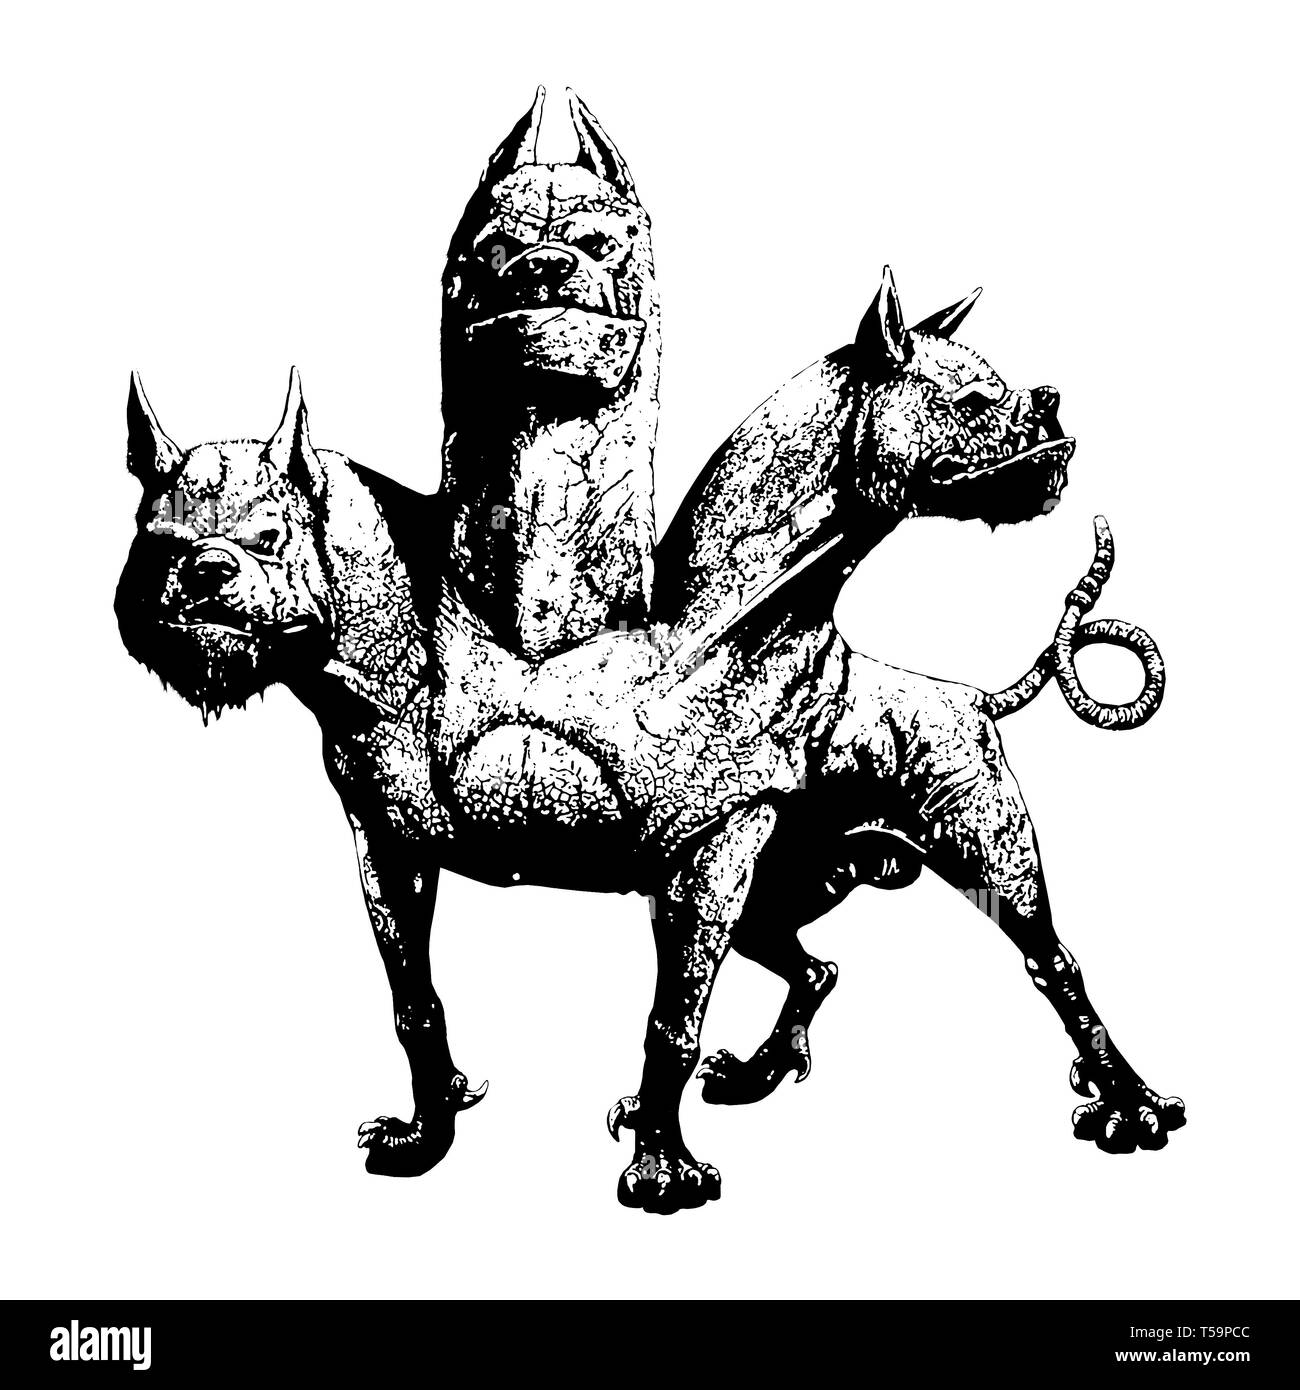 Multi headed dog Cerberus illustration. Hound of Hades. Greek mythology. Stock Photo